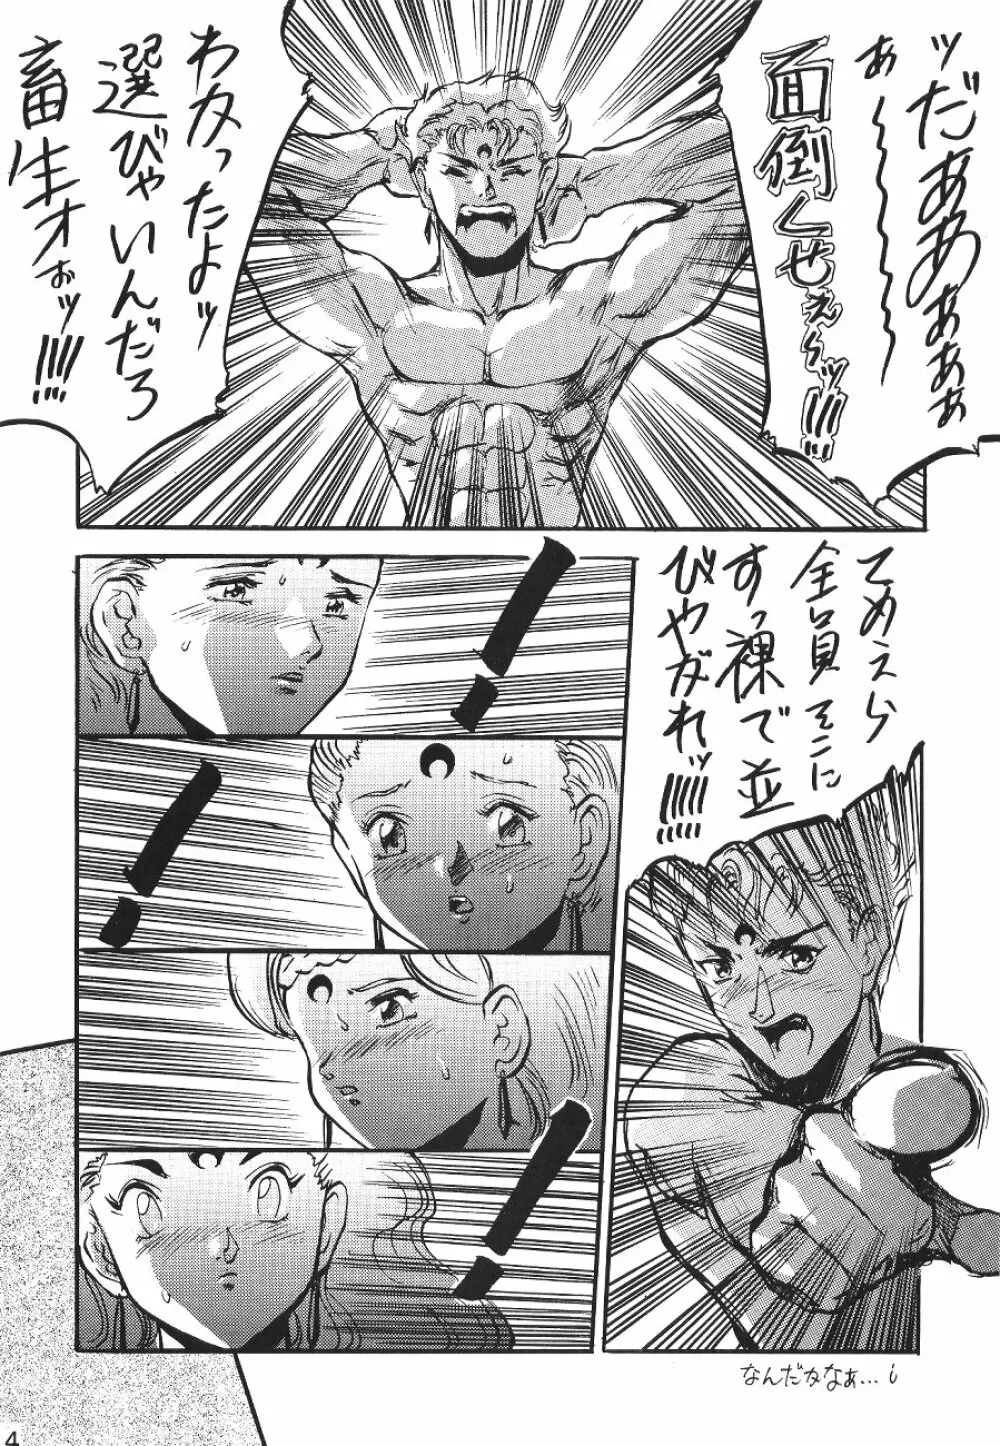 KATZE 7 上巻 - page14